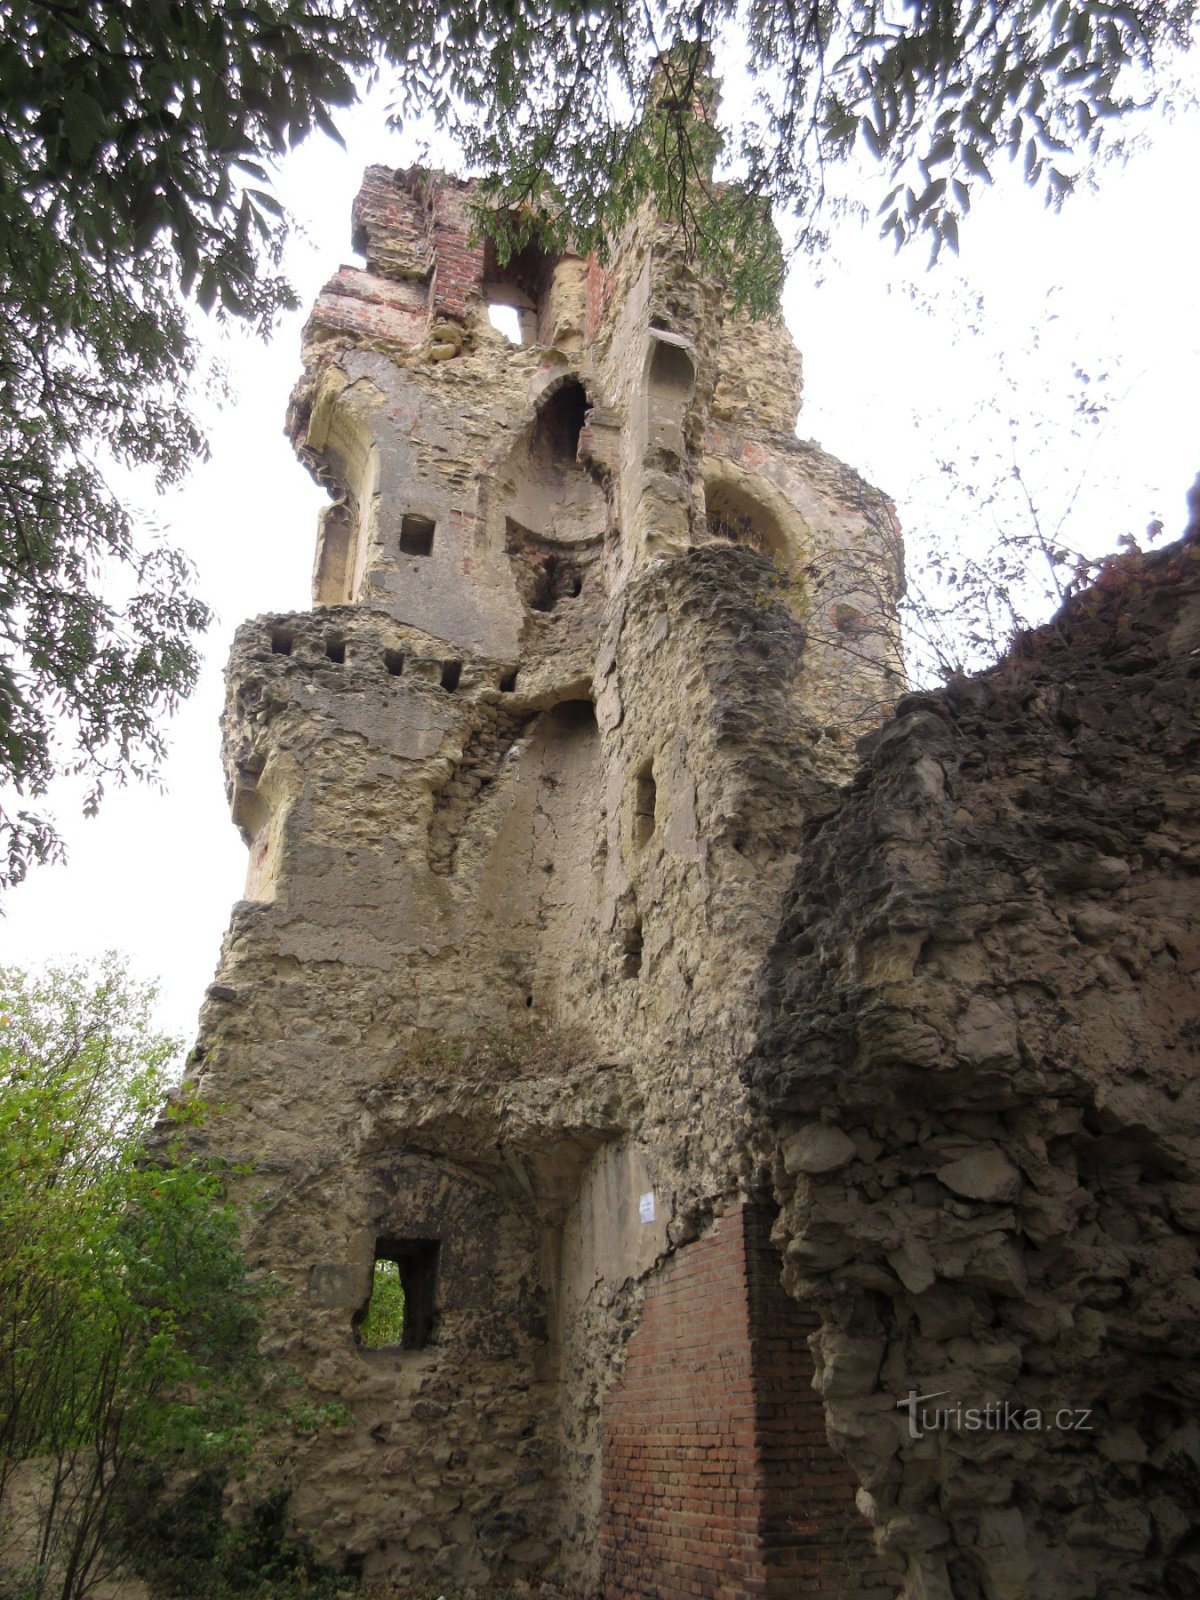 Дражице - краткая история дражицких владык и развалин замка